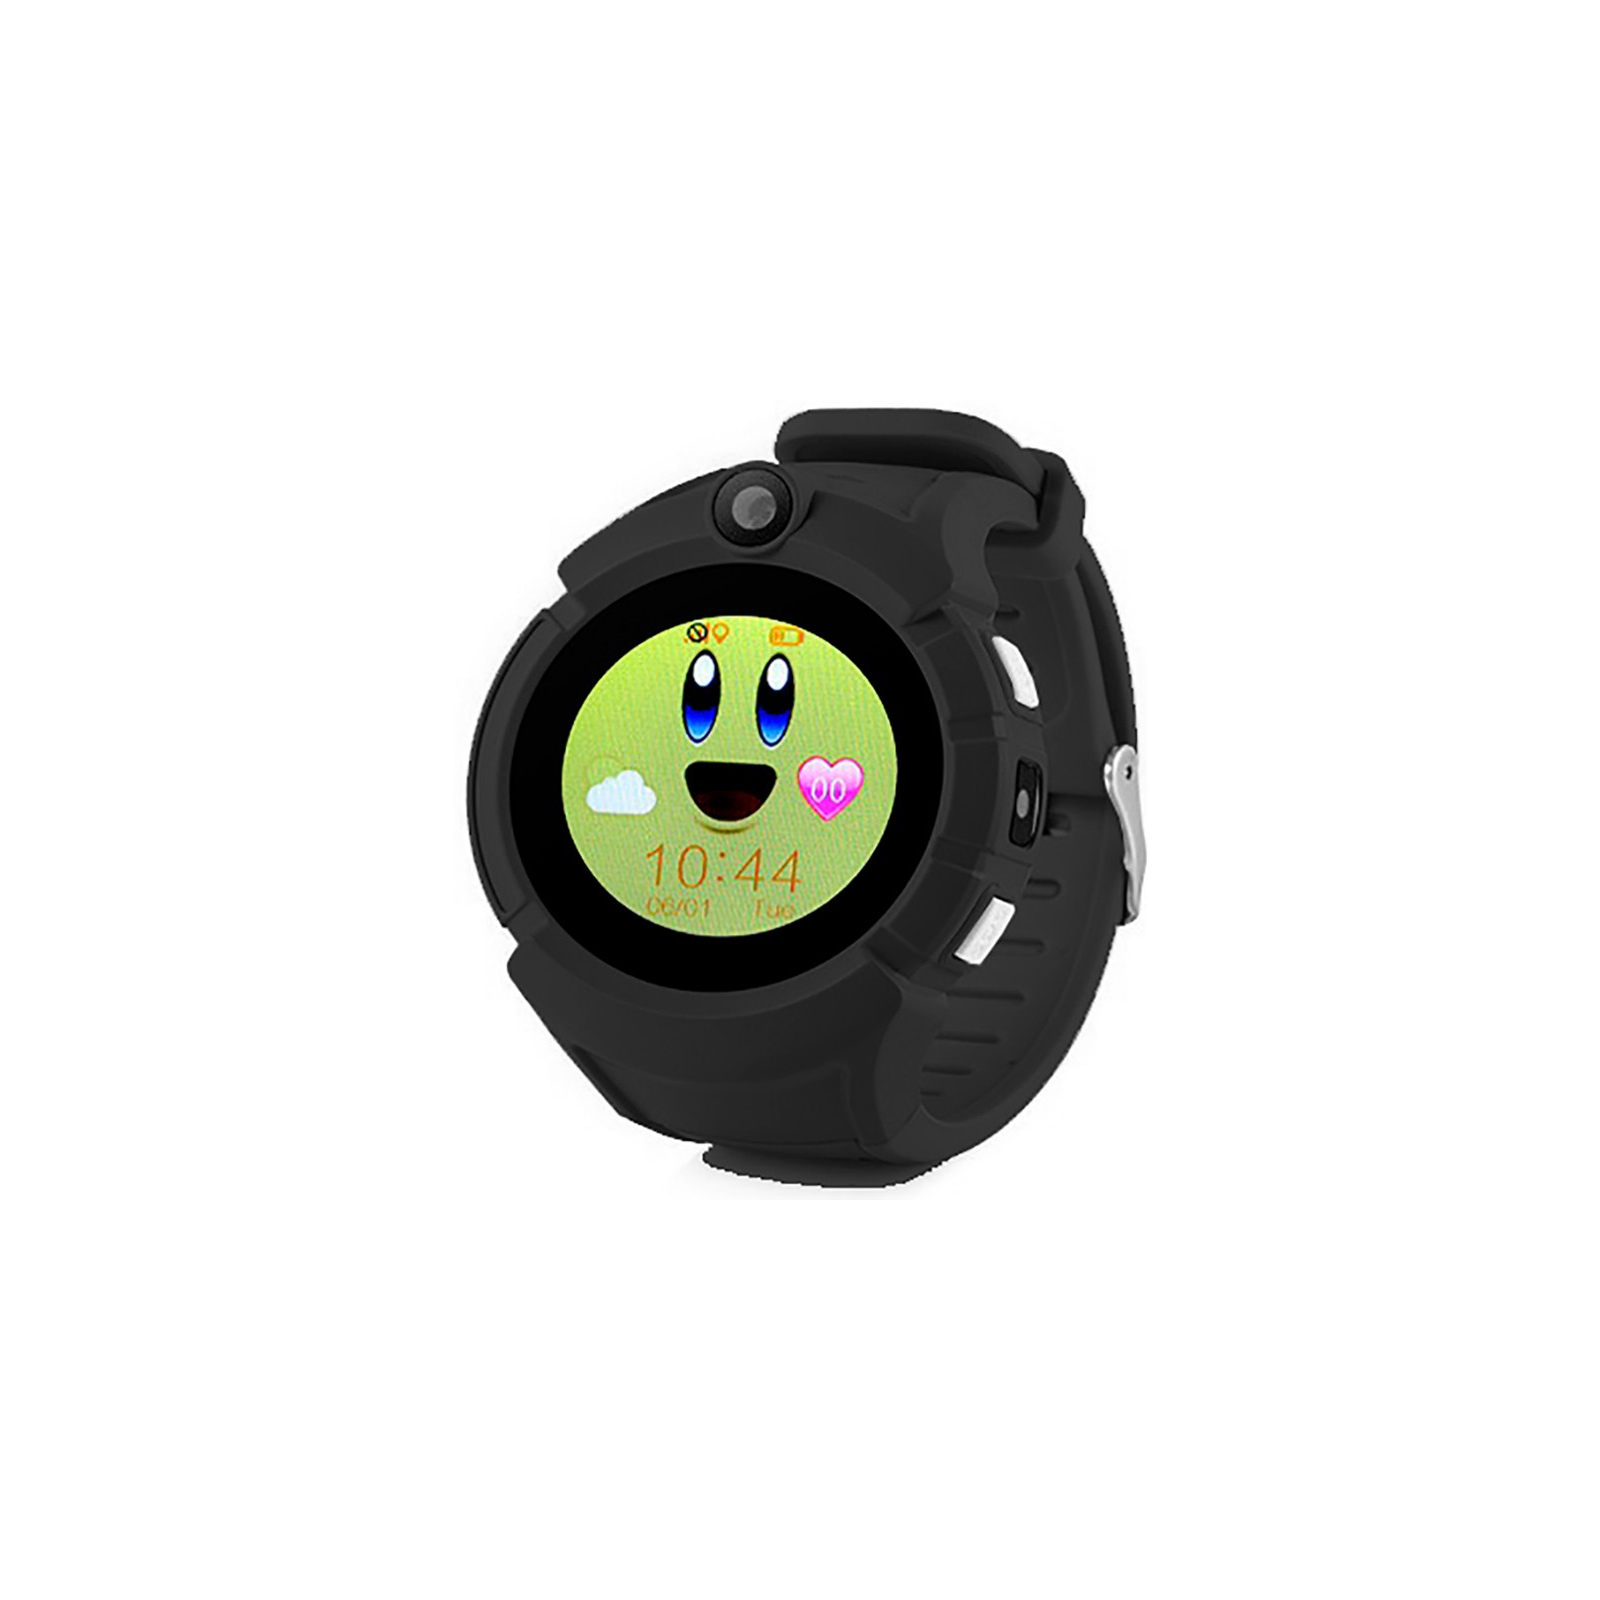 Смарт-часы UWatch GW600 Kid smart watch Pink (F_100008)